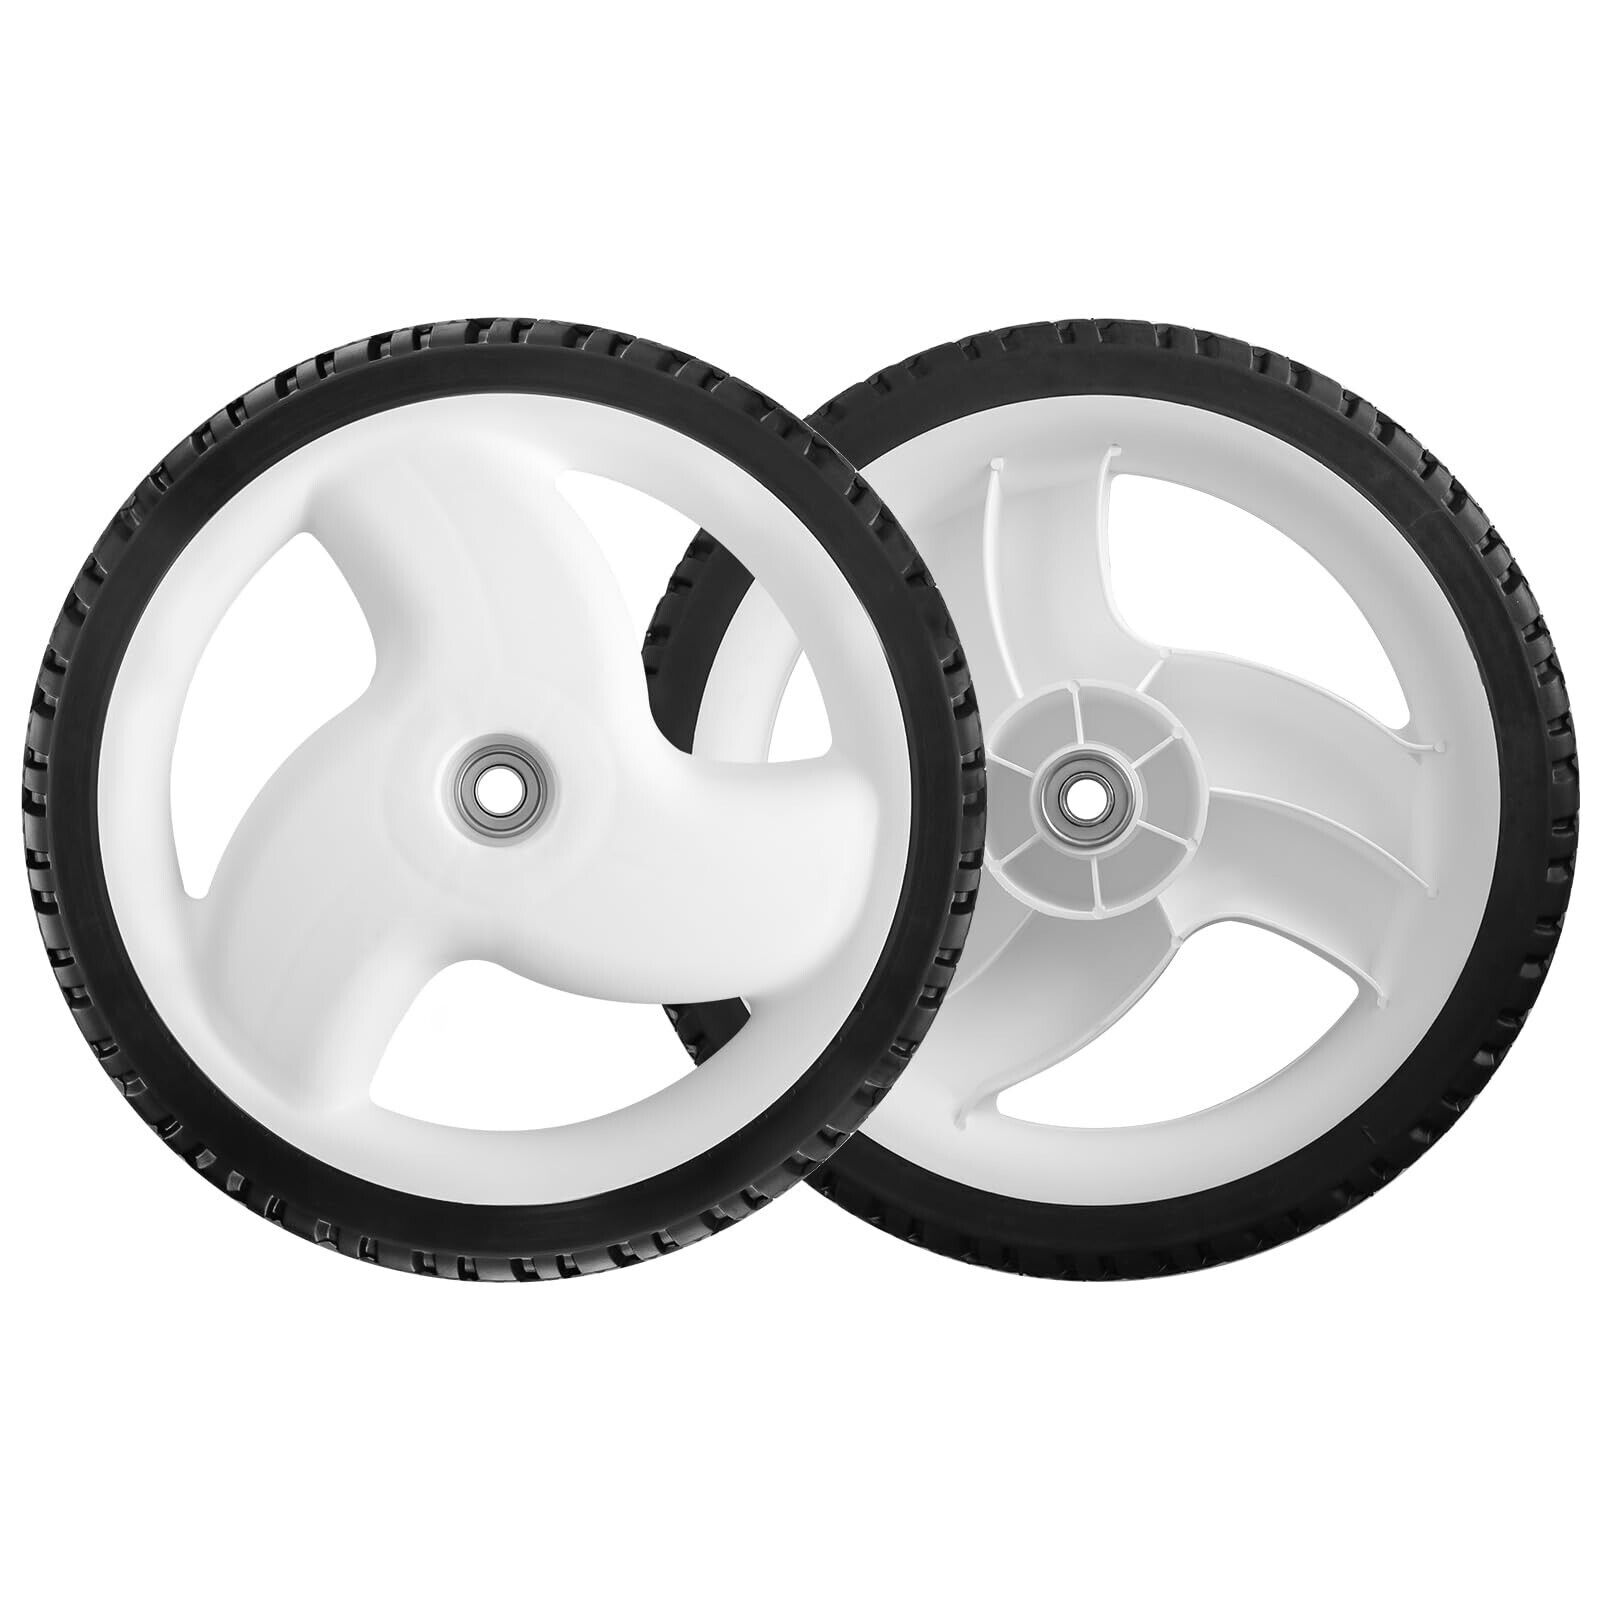 105-1816 Rear Wheel High Wheel Fit Toro 20212 20016 20019, Replace 205-268